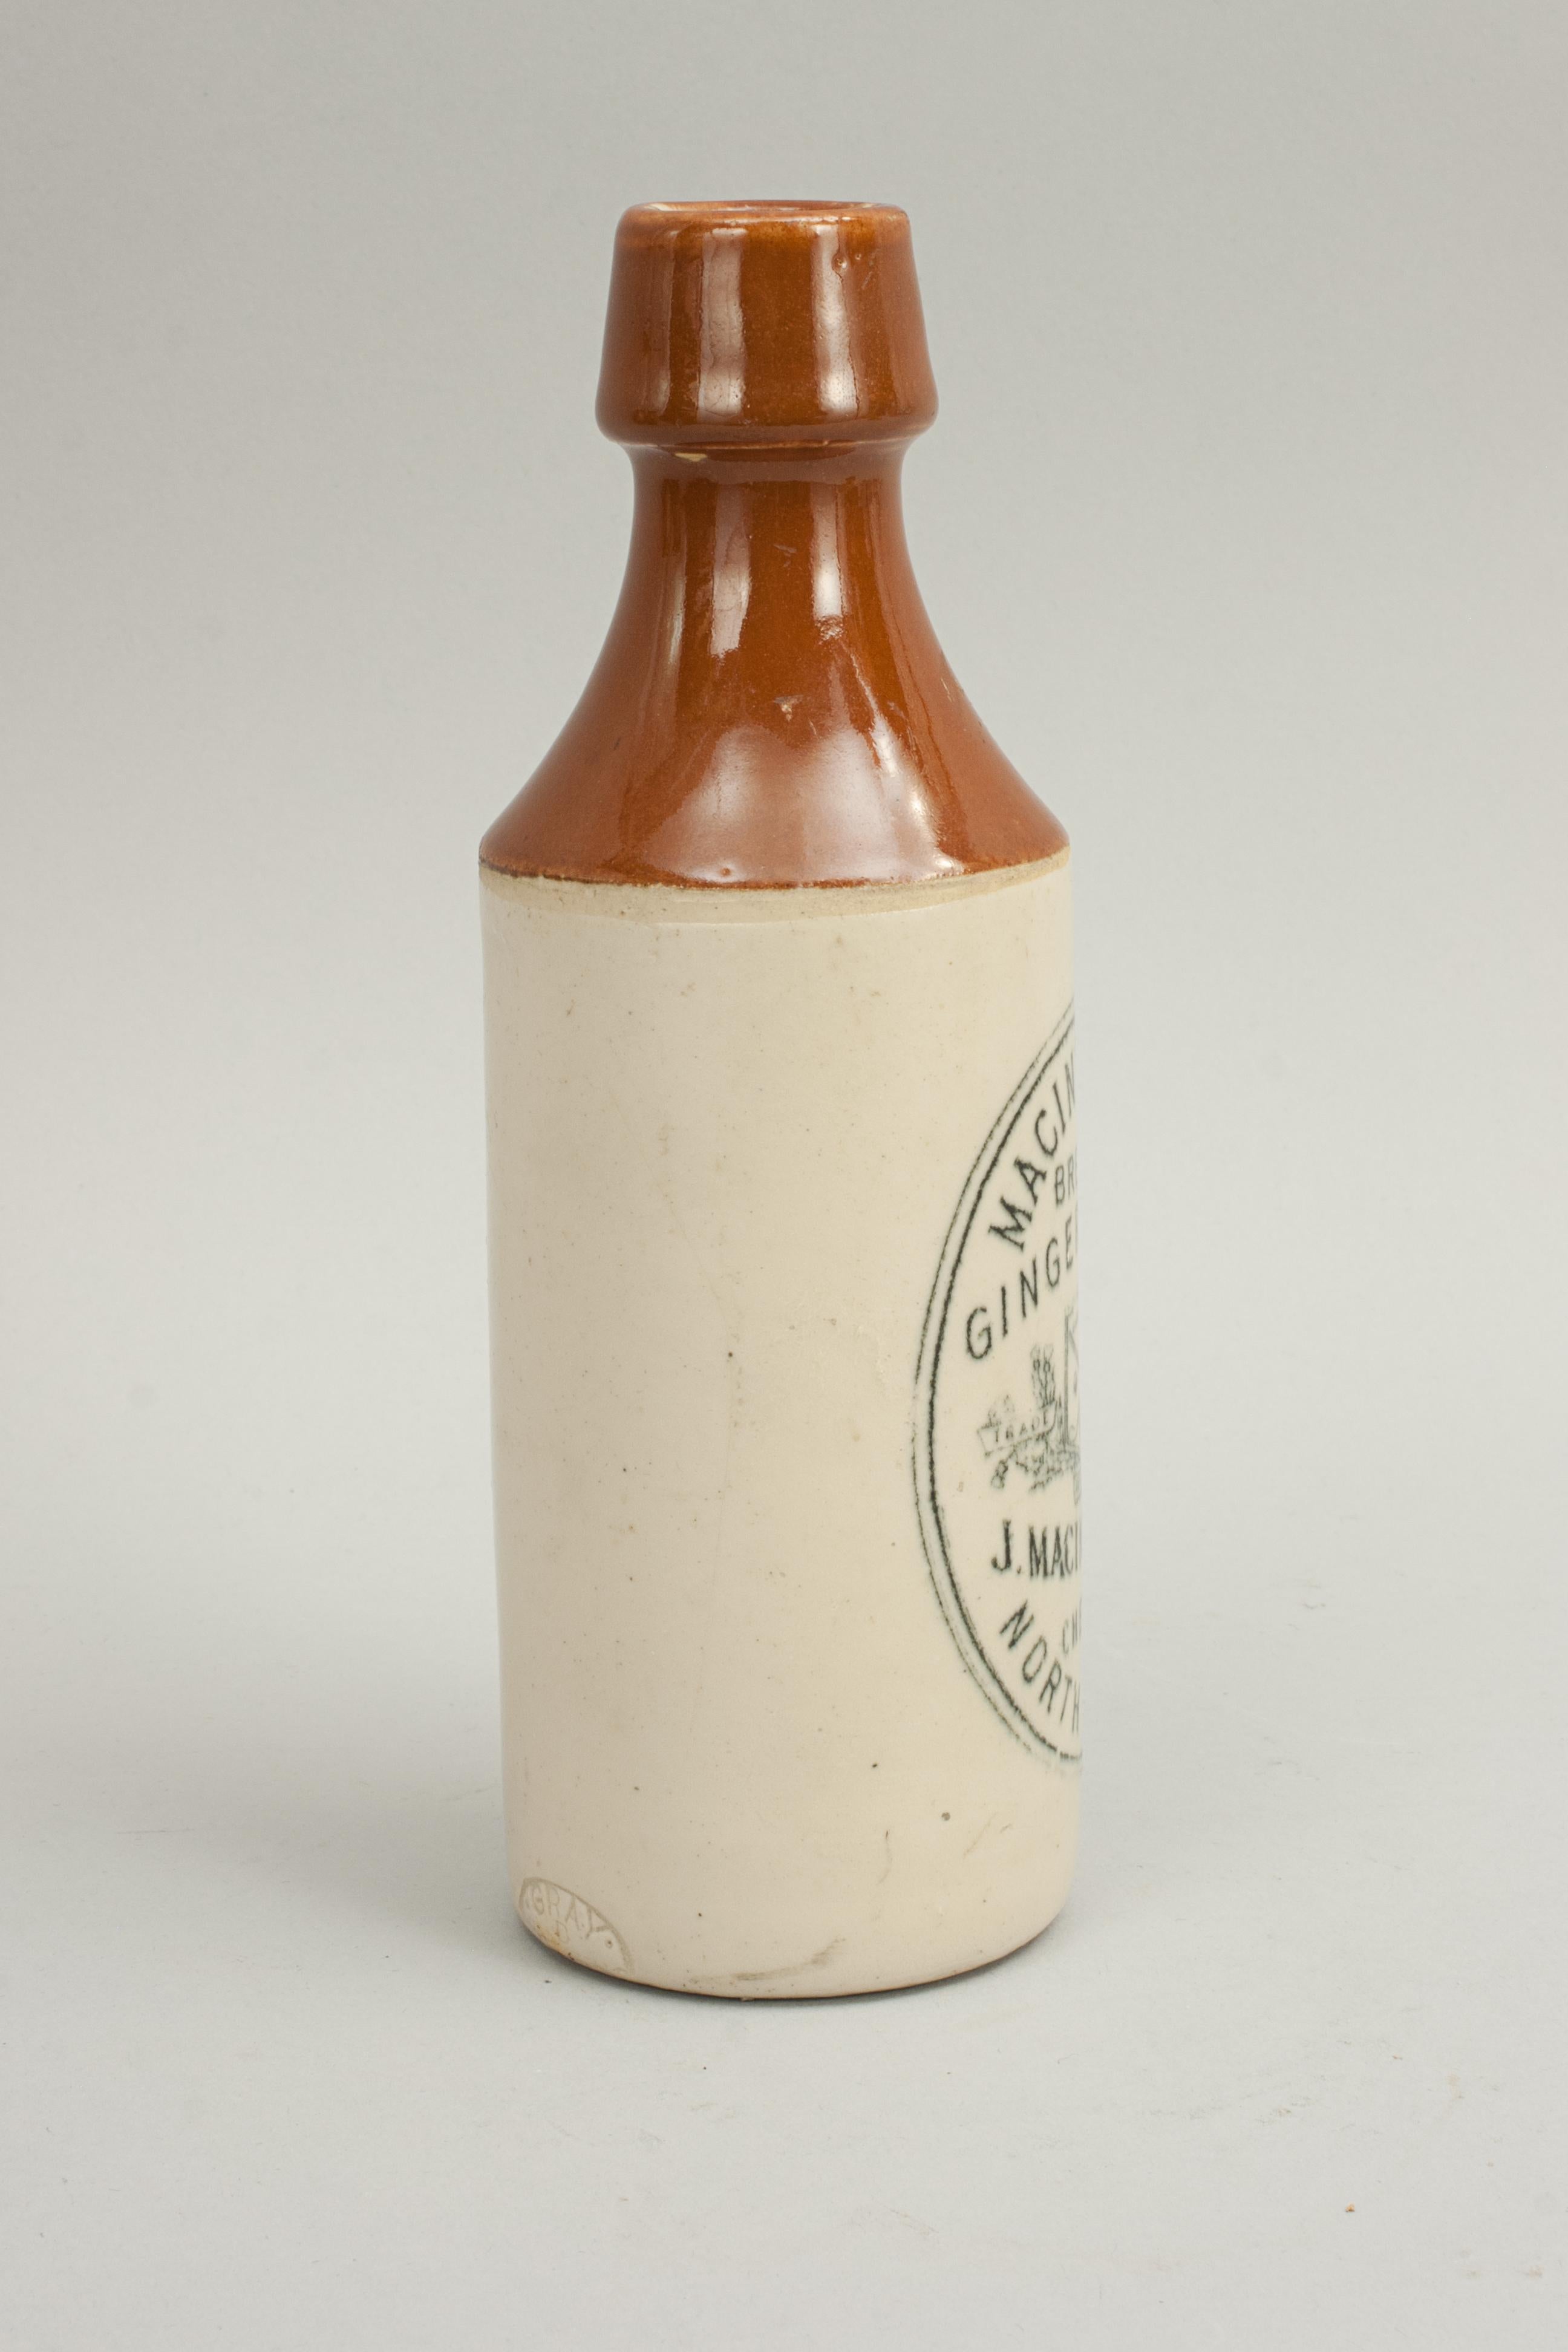 ginger beer bottle antique